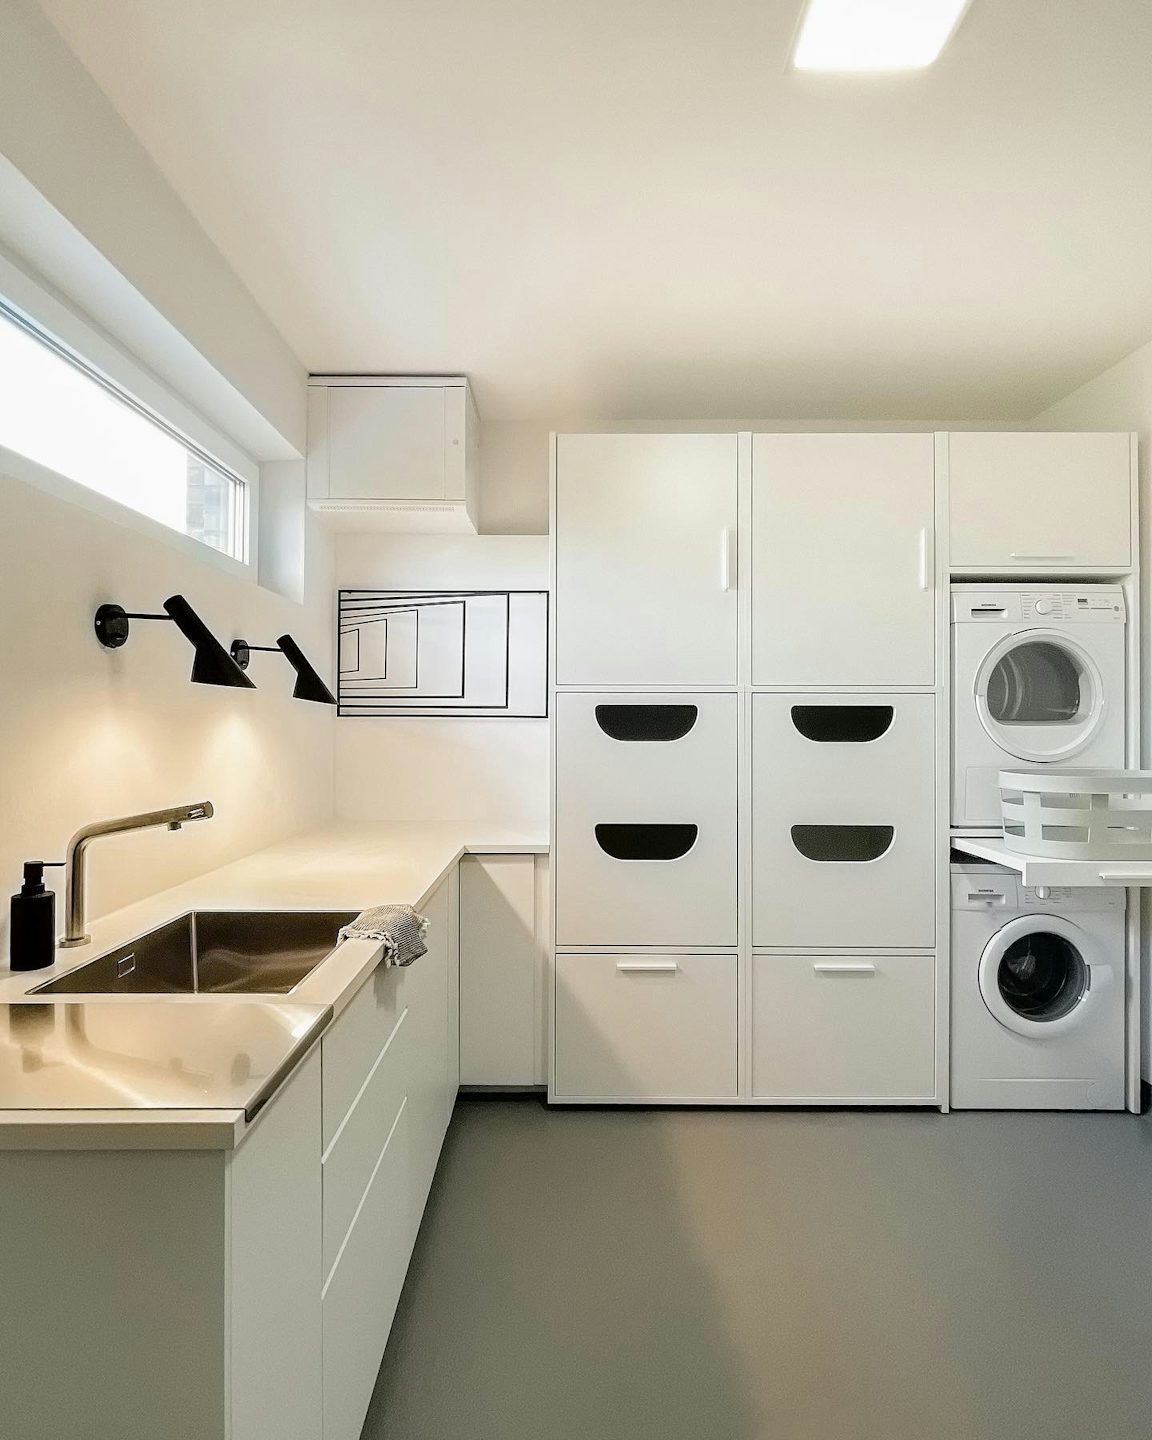 bijkeuken inbouwkast wit met droogkast op de wasmachine met uittrekplateau voor wasmand in opbergkasten voor wasproducten en keukenblok wit wastoren wasmachine ombouw inspiratie ideeen interieur